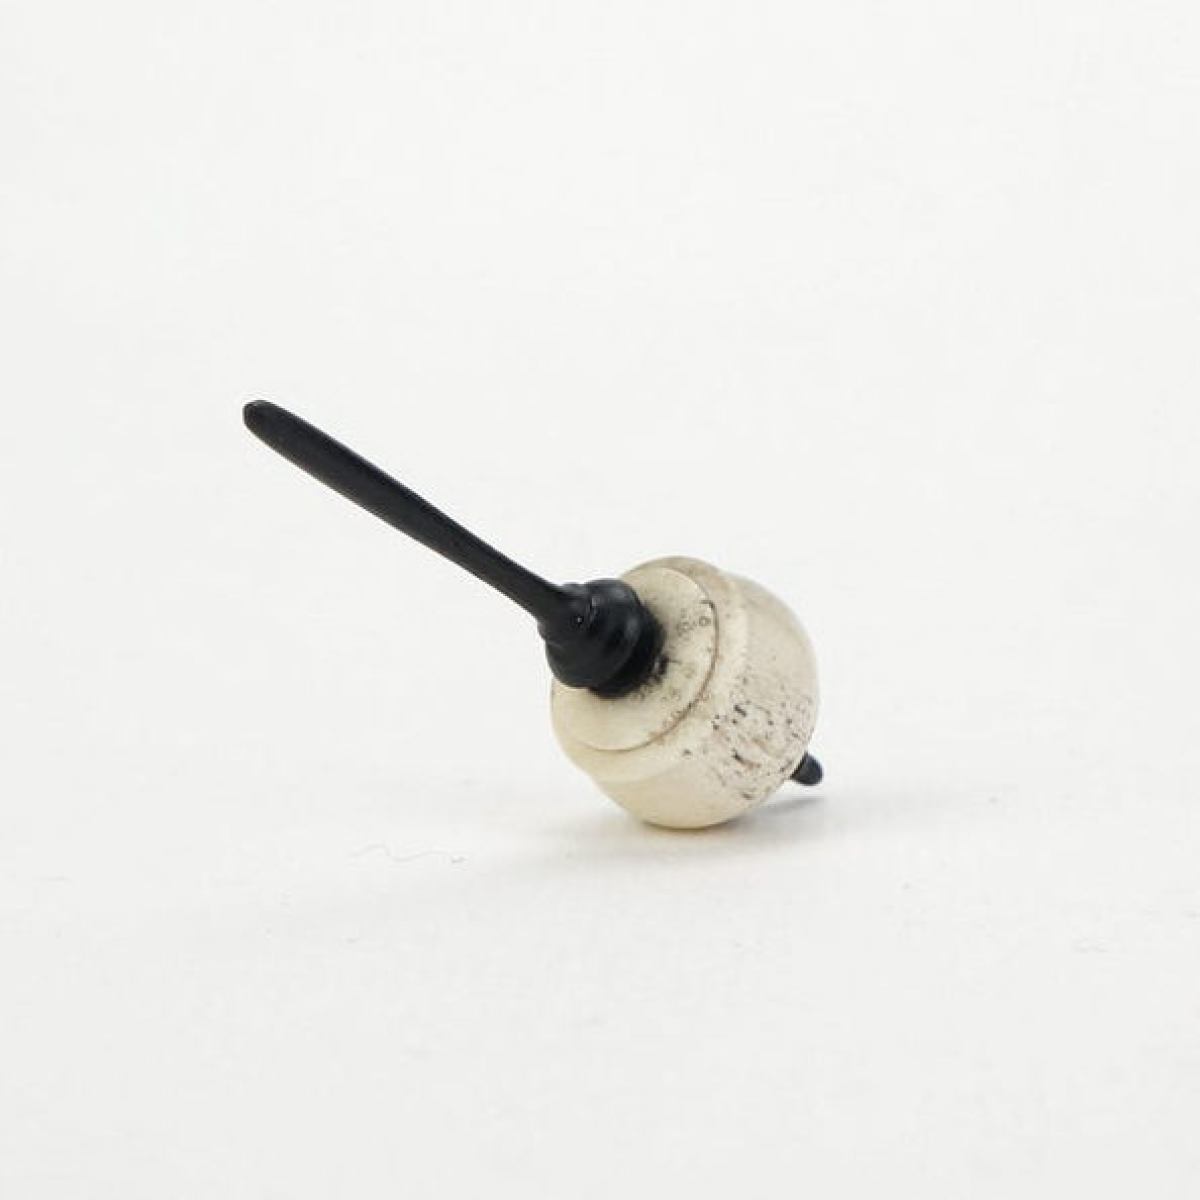 Tiny Spinning Top Handmade of Roebuck Horn and Ebony